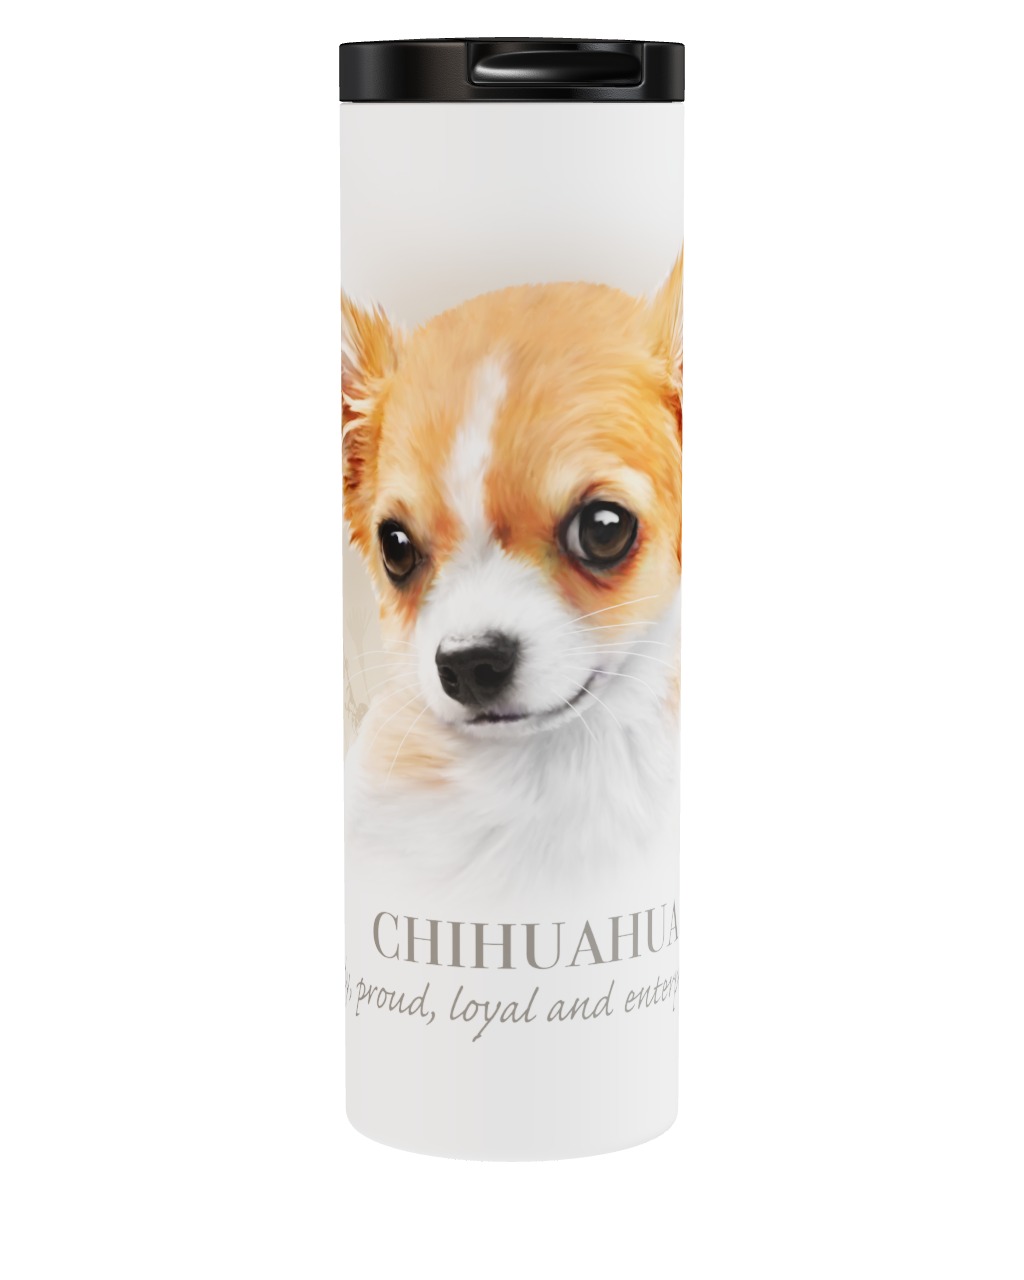 Chihuahua Tumbler